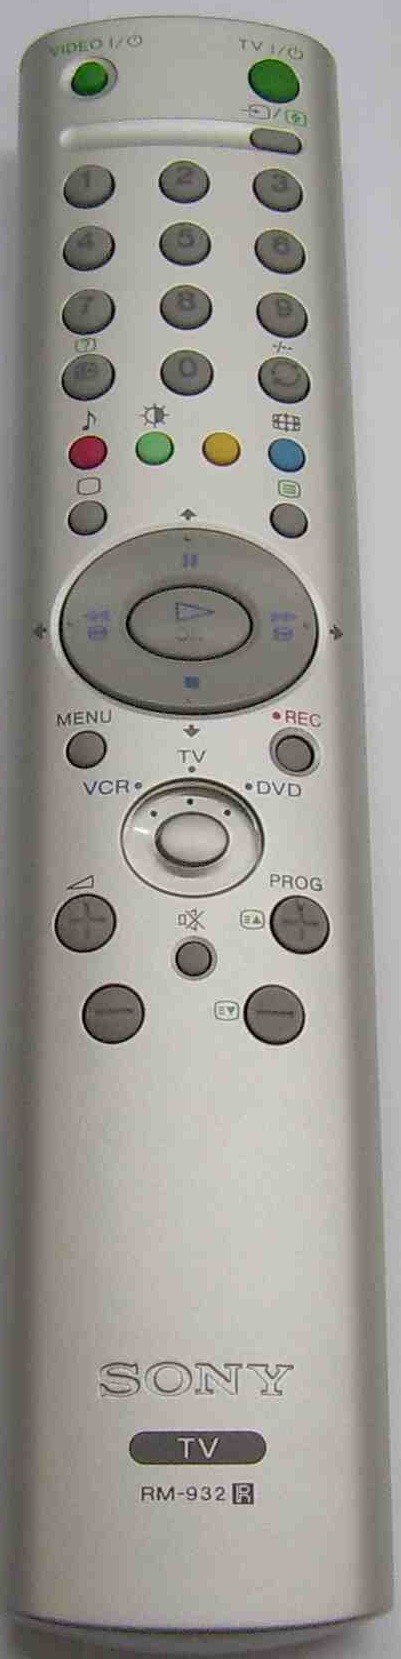 SONY KE42TS2E Remote Control Original